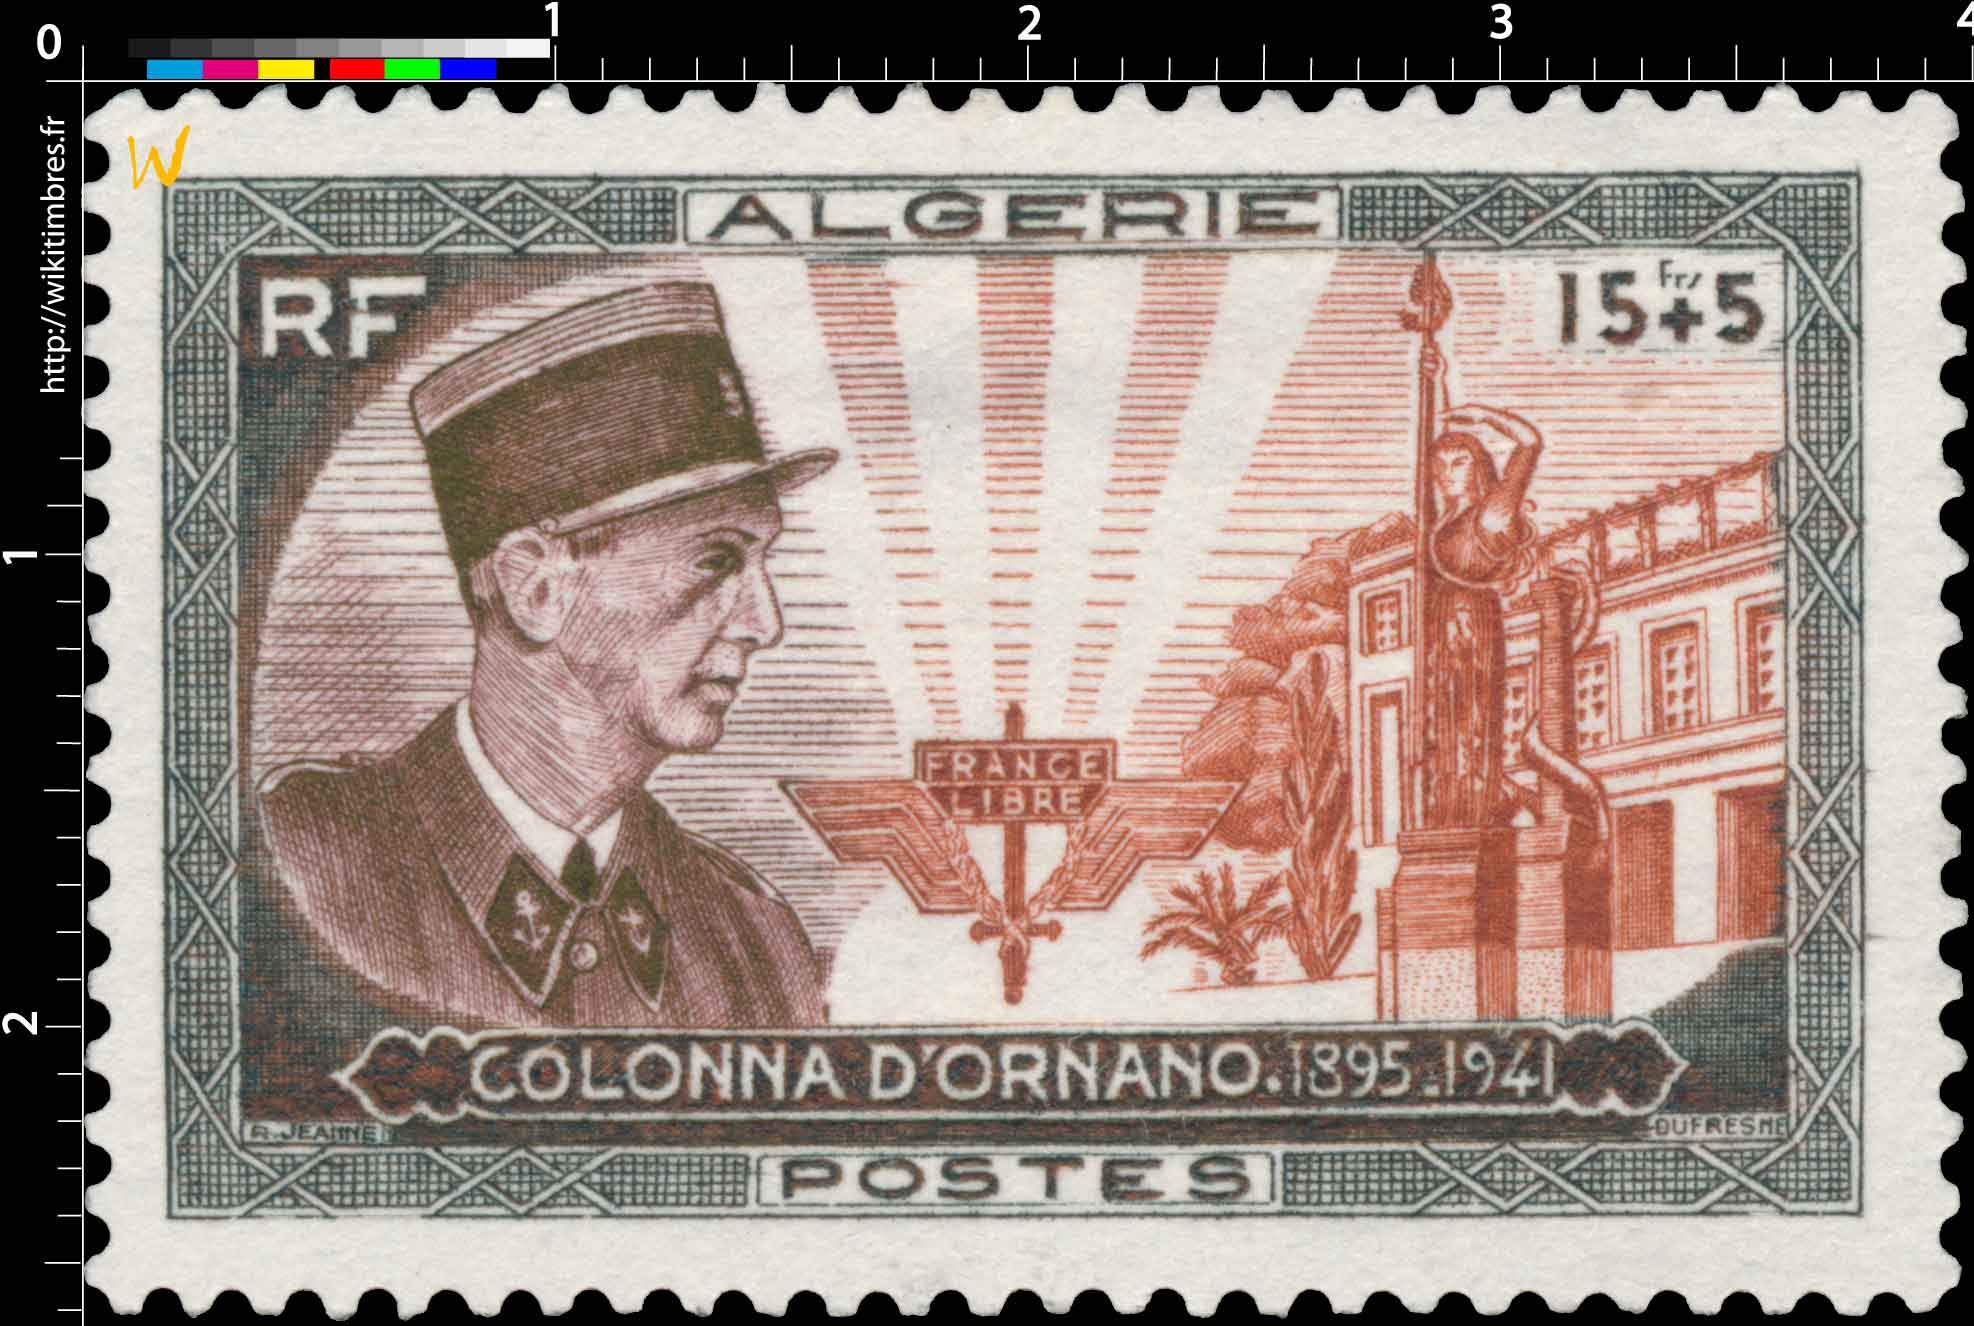 Algérie - Colonel Colonna d'Ornano